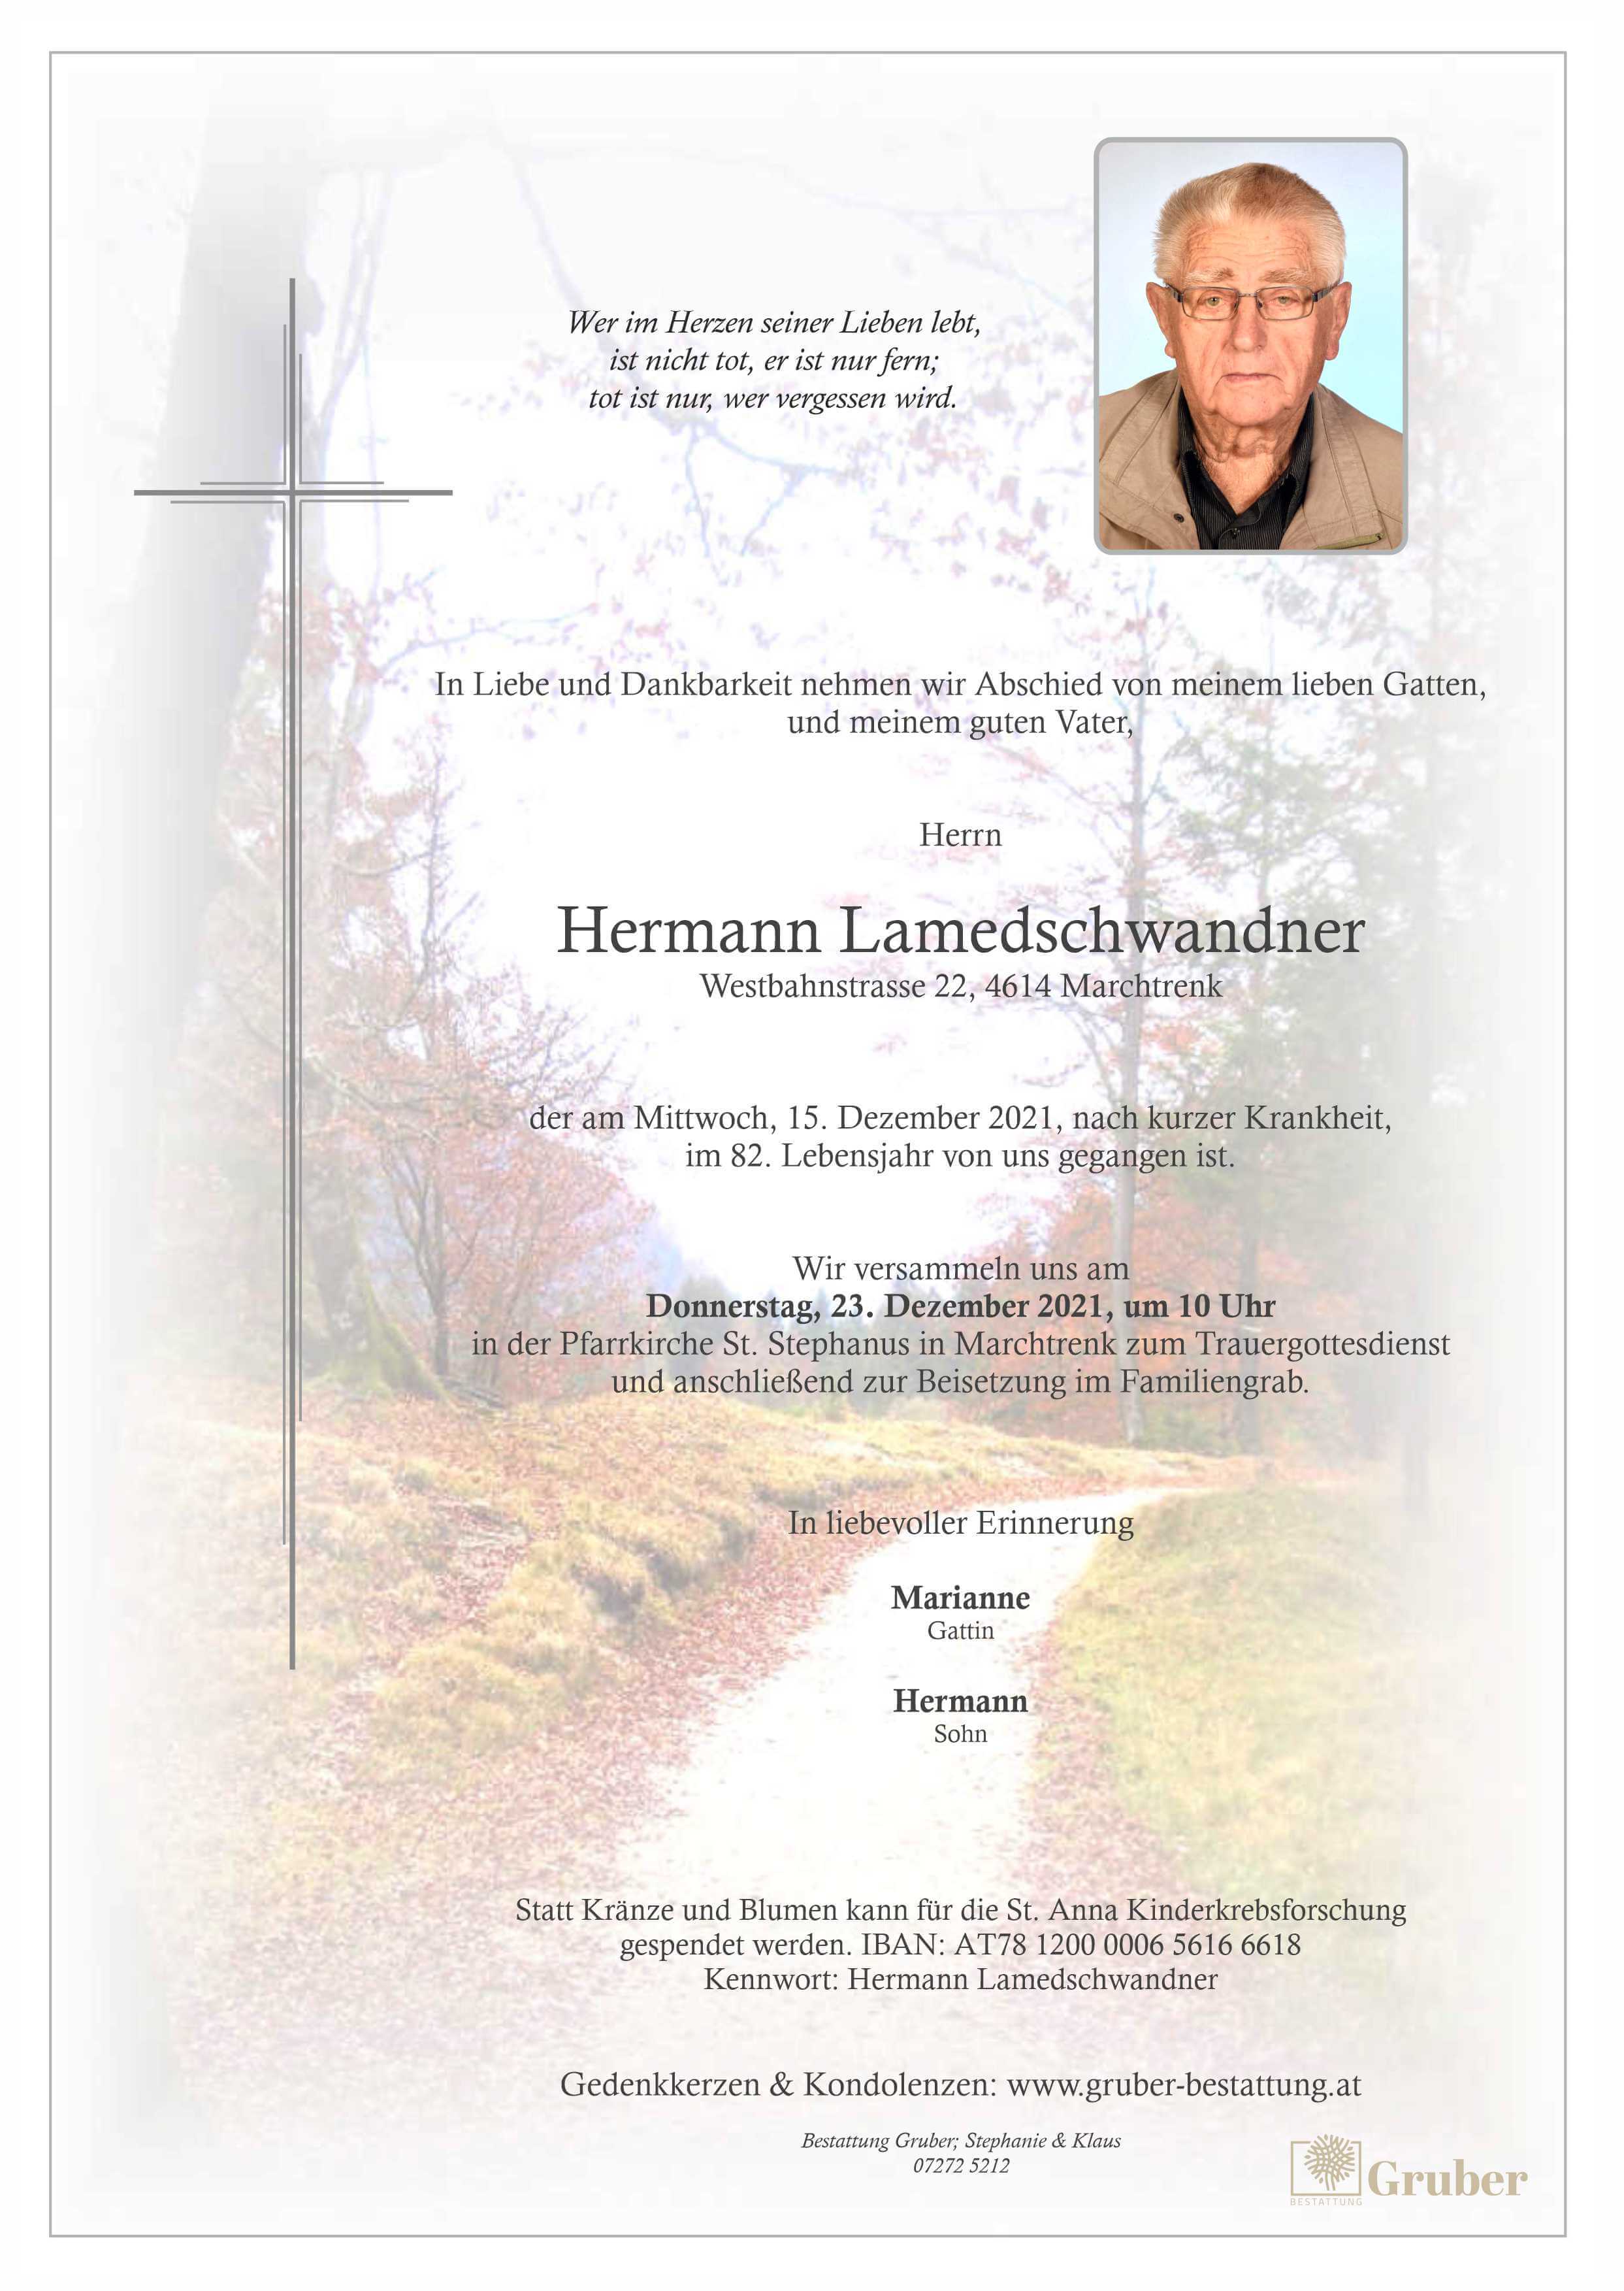 Hermann Lamedschwandner (Marchtrenk)